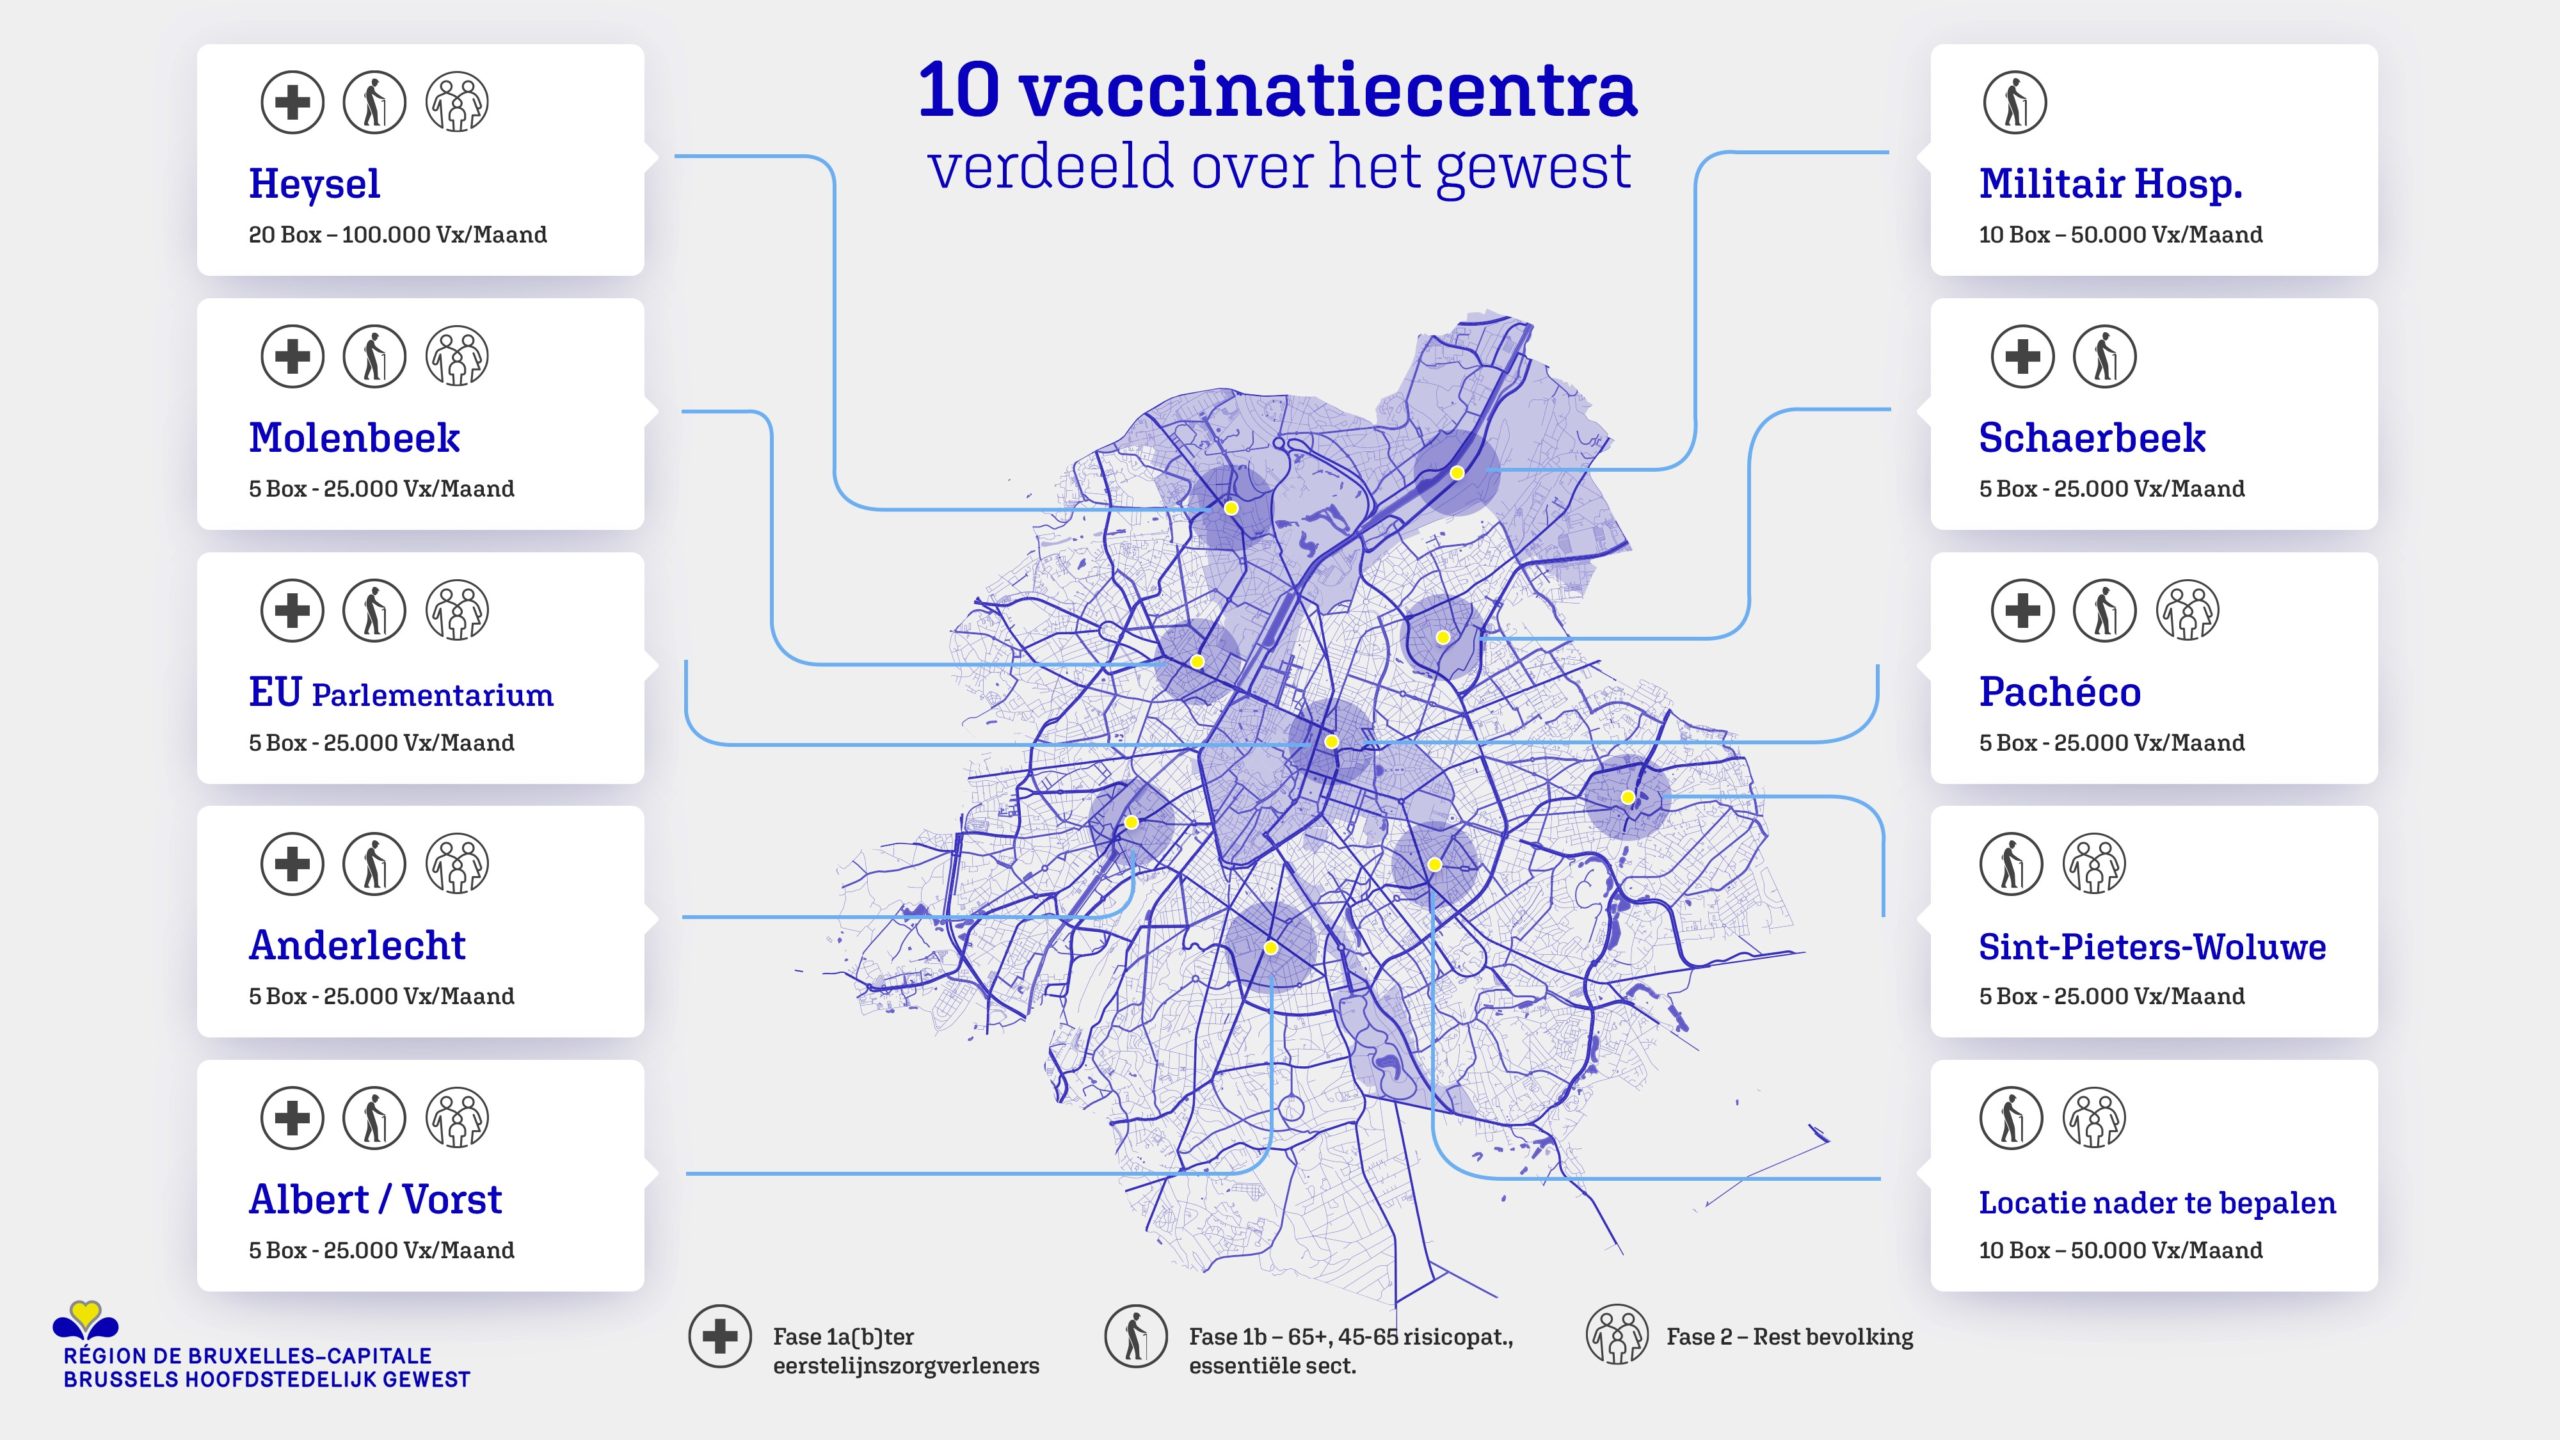 De Brusselse vaccinatiestrategie: tijdlijn en nieuwe vaccinatiecentra